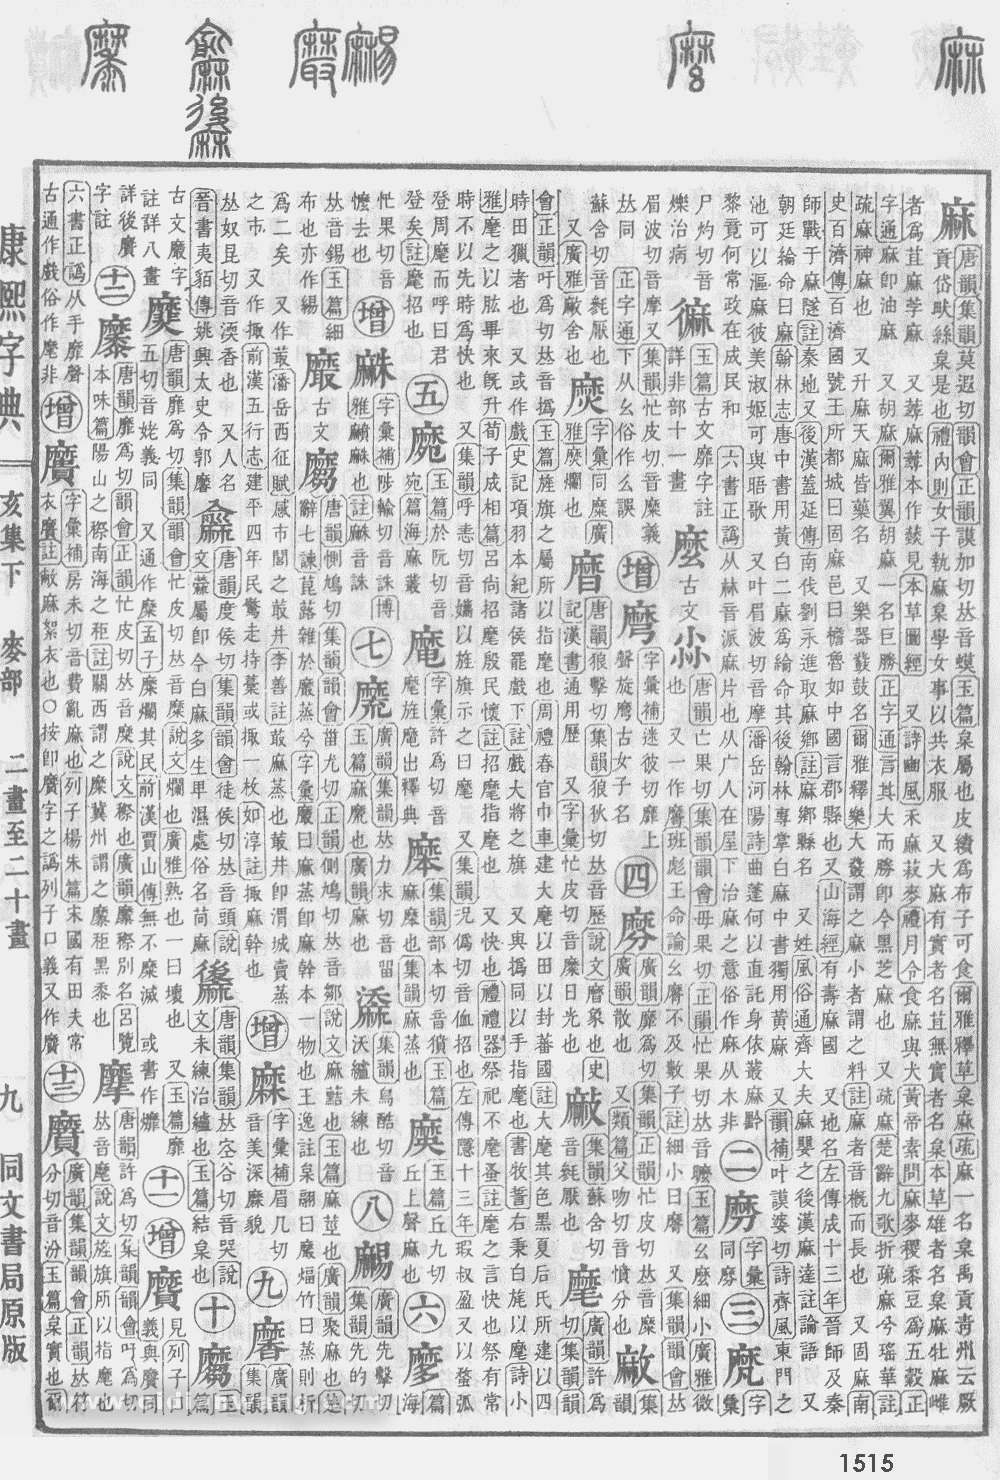 康熙字典掃描版第1515頁